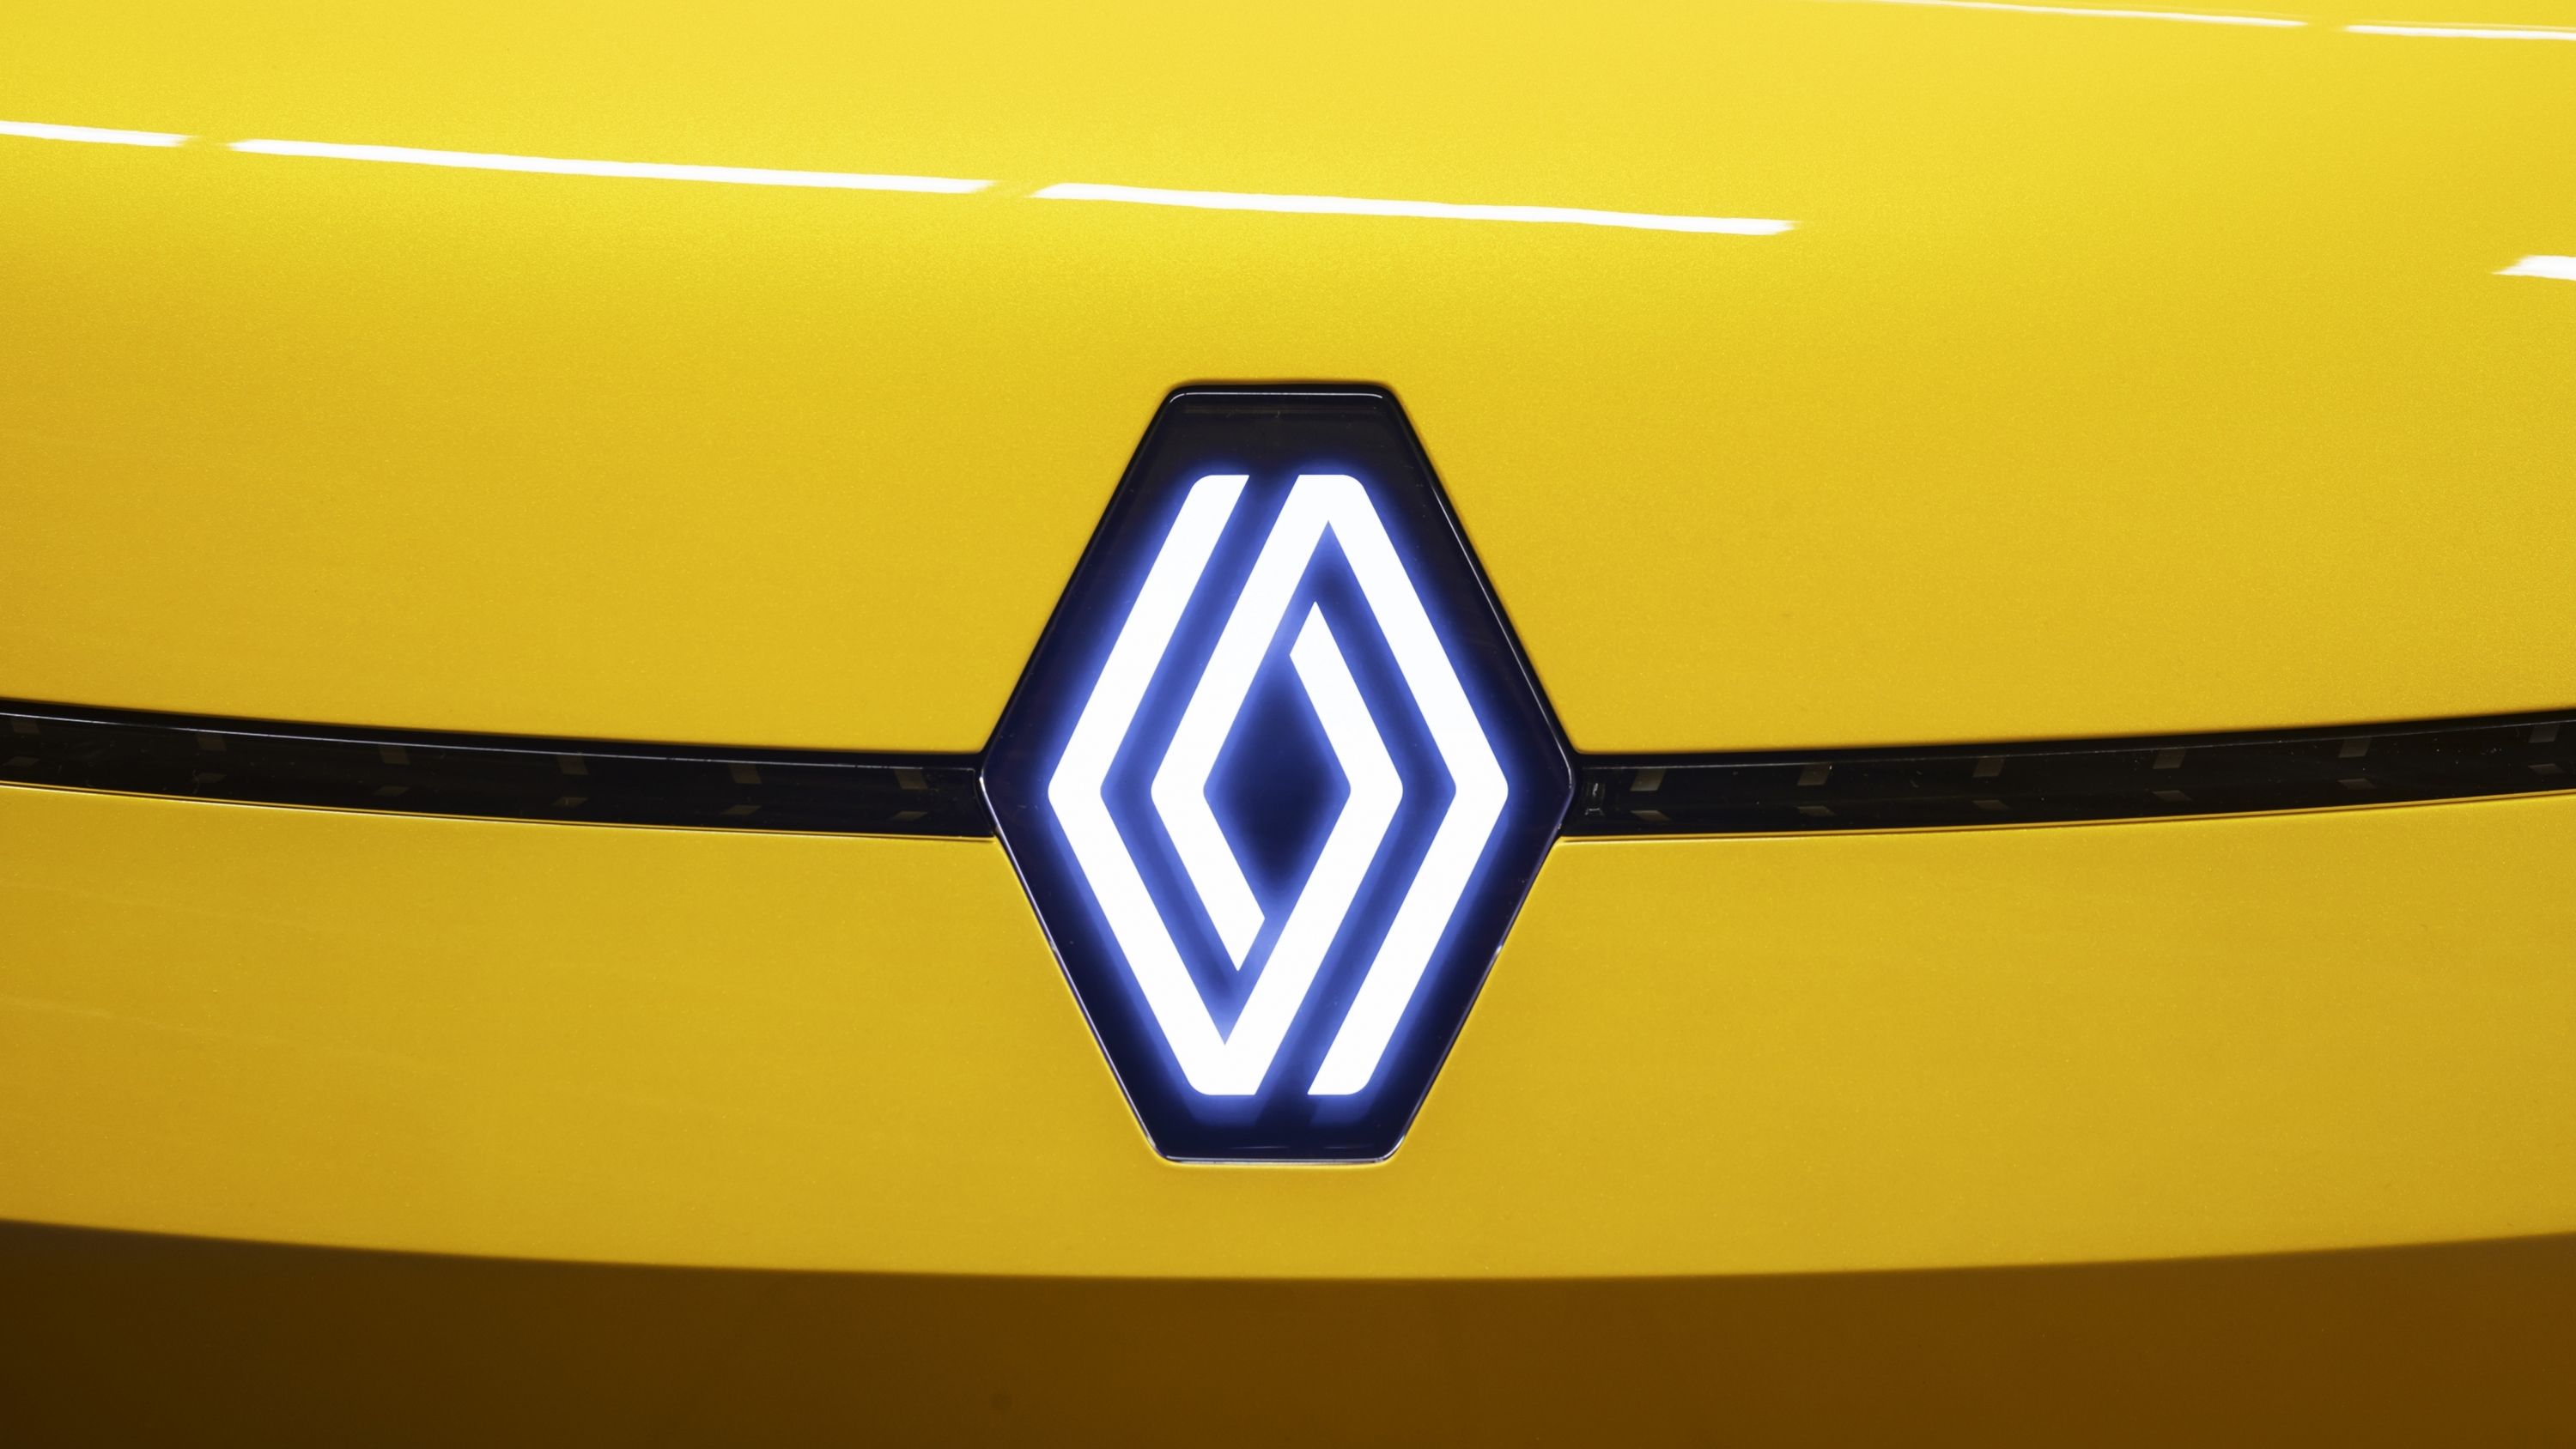 Renault mira hacia el futuro con la presentación de su nuevo logo